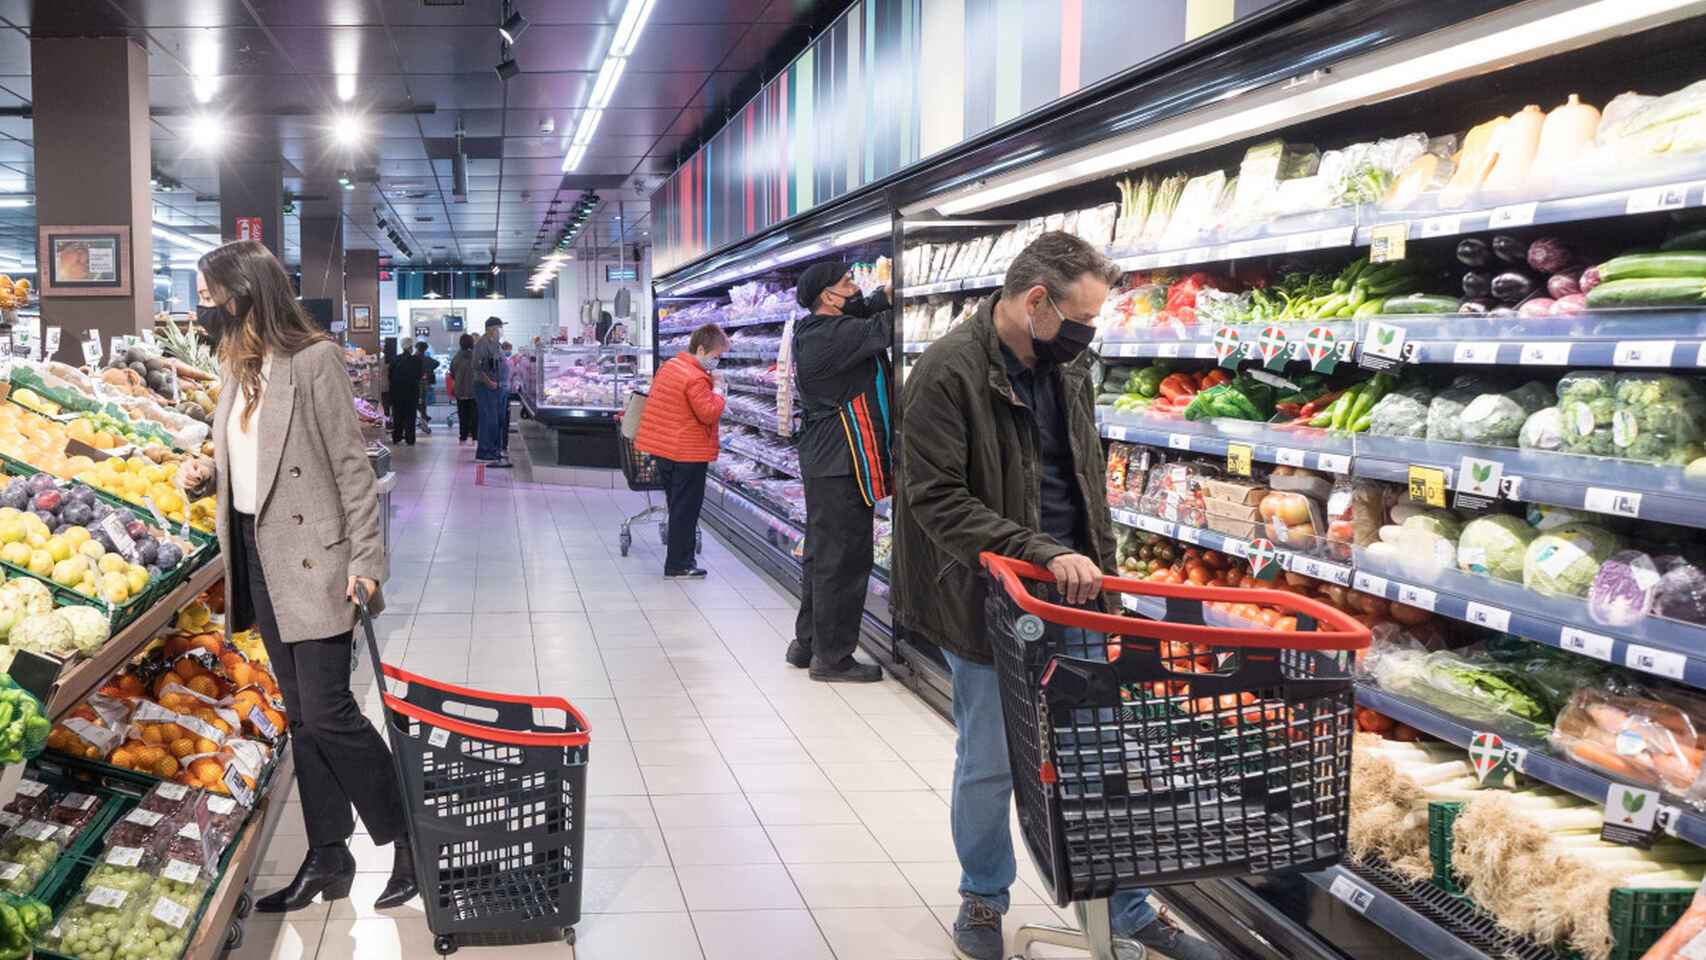 La cesta de la compra puede ser 1.703 más barata al año, según el supermercado elegido.